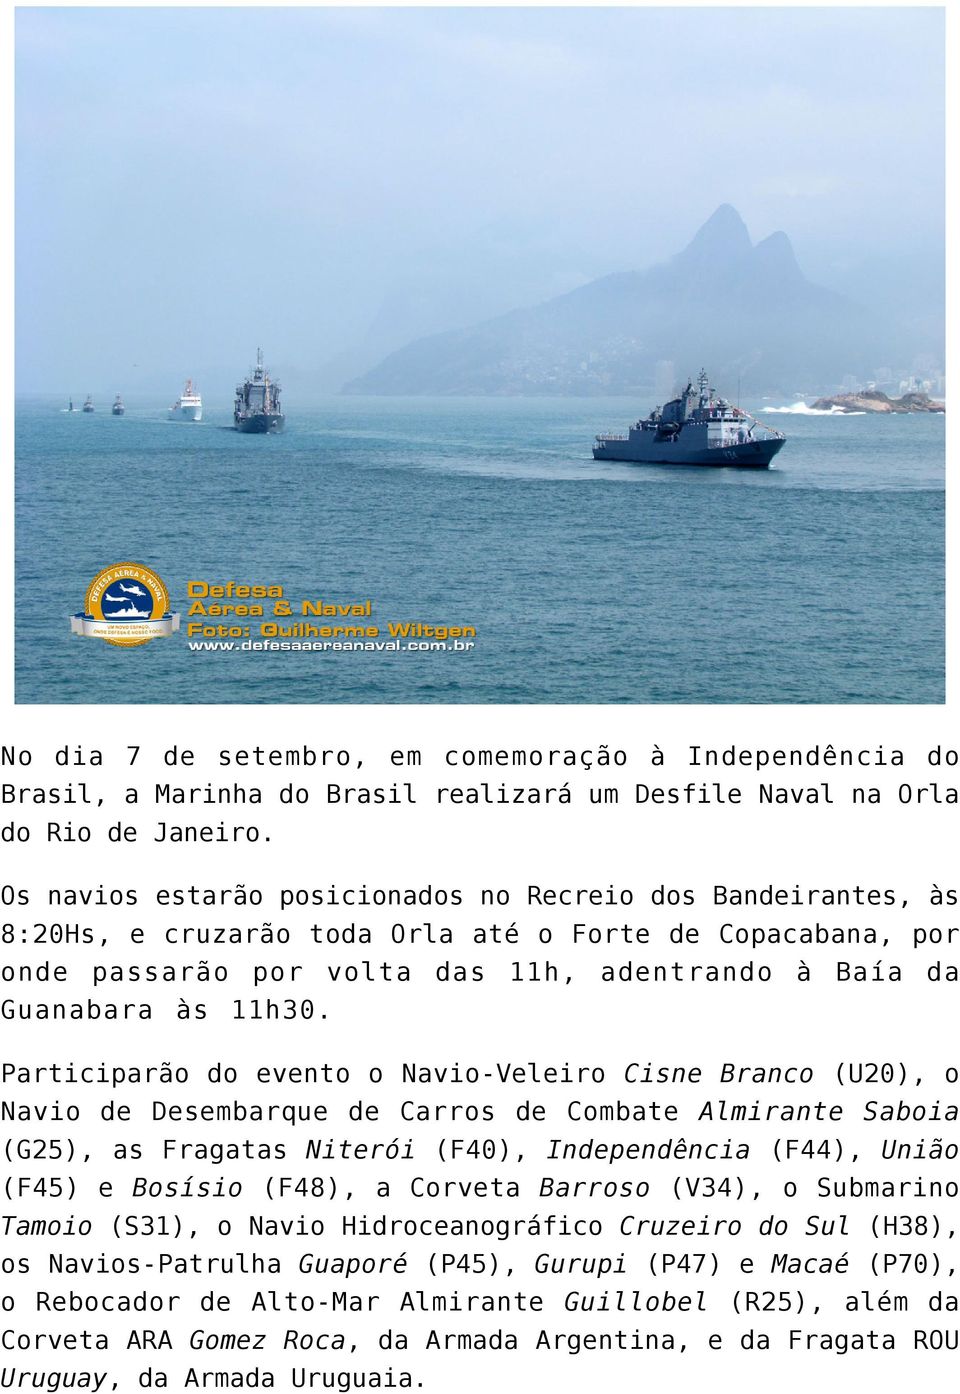 Participarão do evento o Navio-Veleiro Cisne Branco (U20), o Navio de Desembarque de Carros de Combate Almirante Saboia (G25), as Fragatas Niterói (F40), Independência (F44), União (F45) e Bosísio